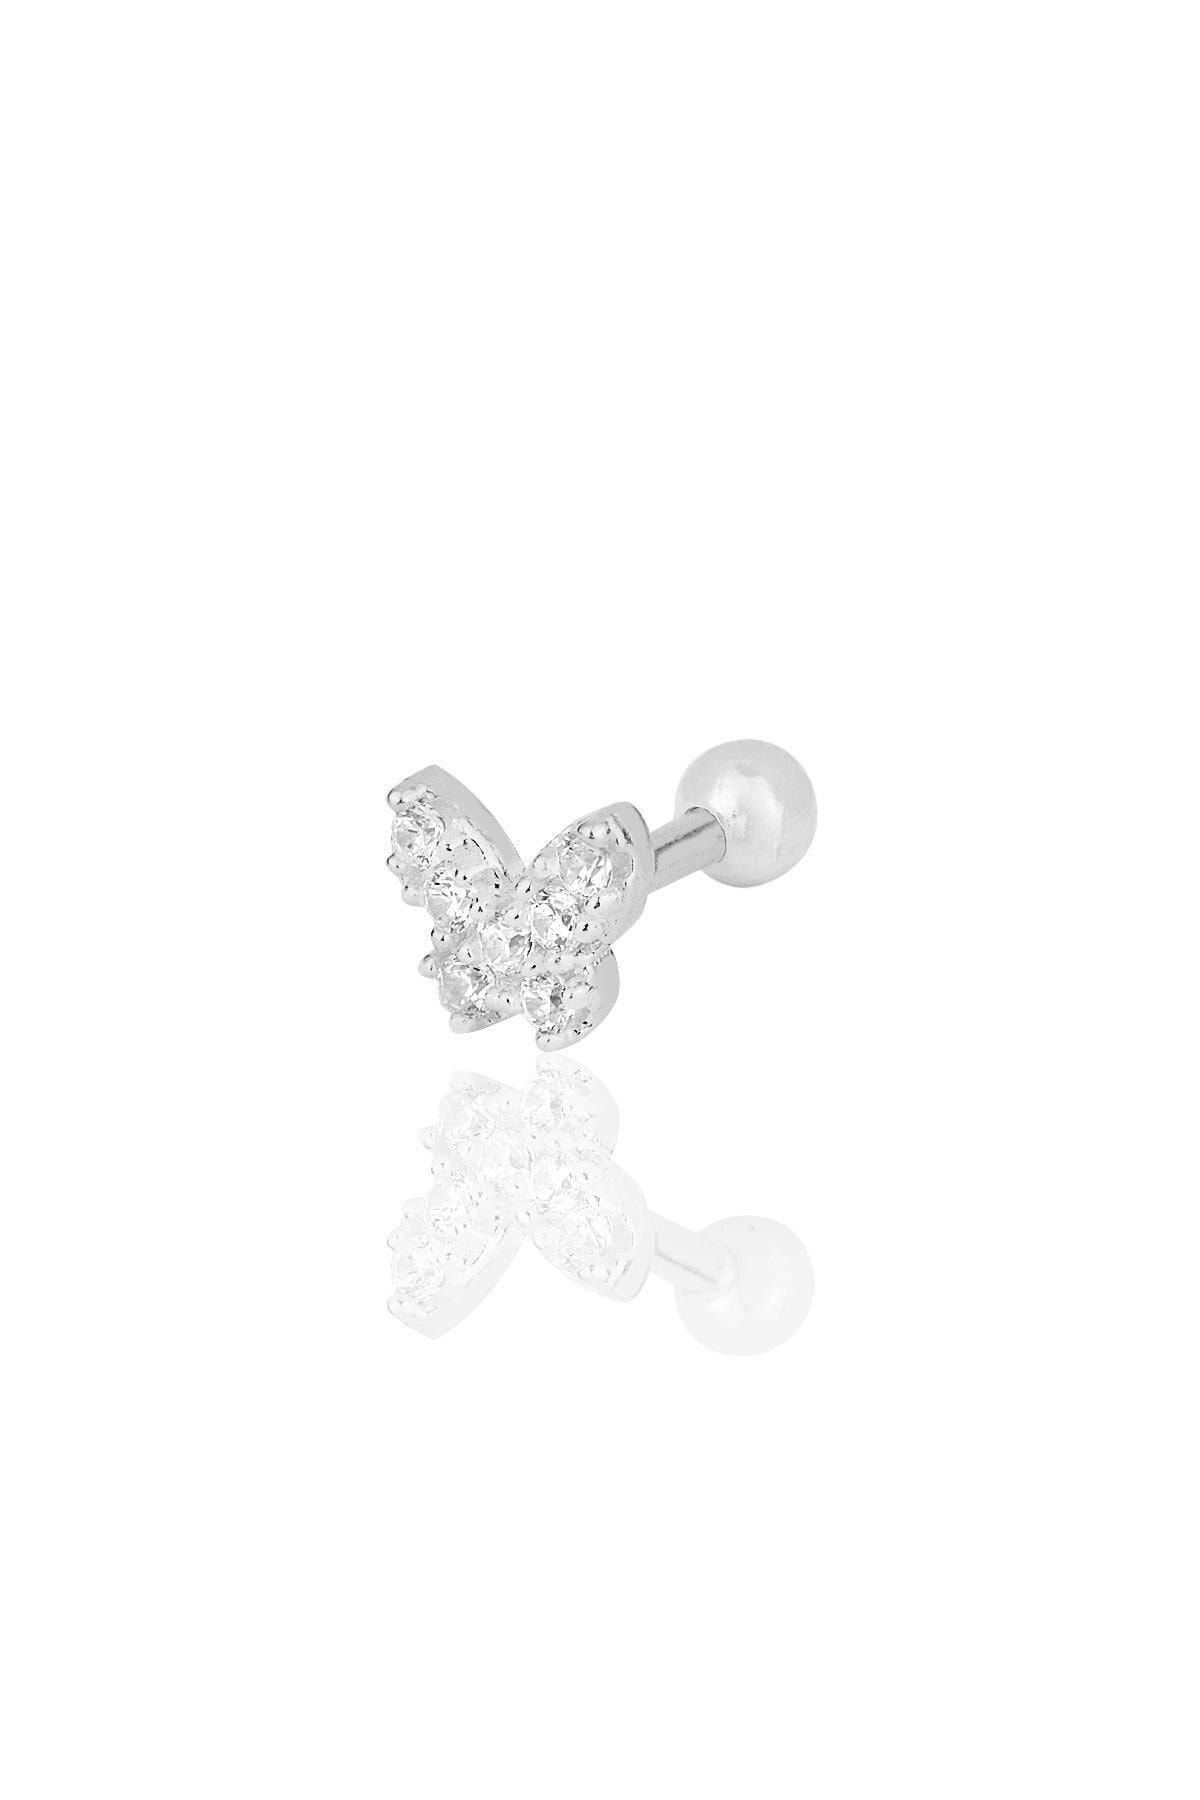 Söğütlü Silver Gümüş Rodyumlu Zirkon Taşlı Kelebek Modeli Tragus Helix Piercing Küpe